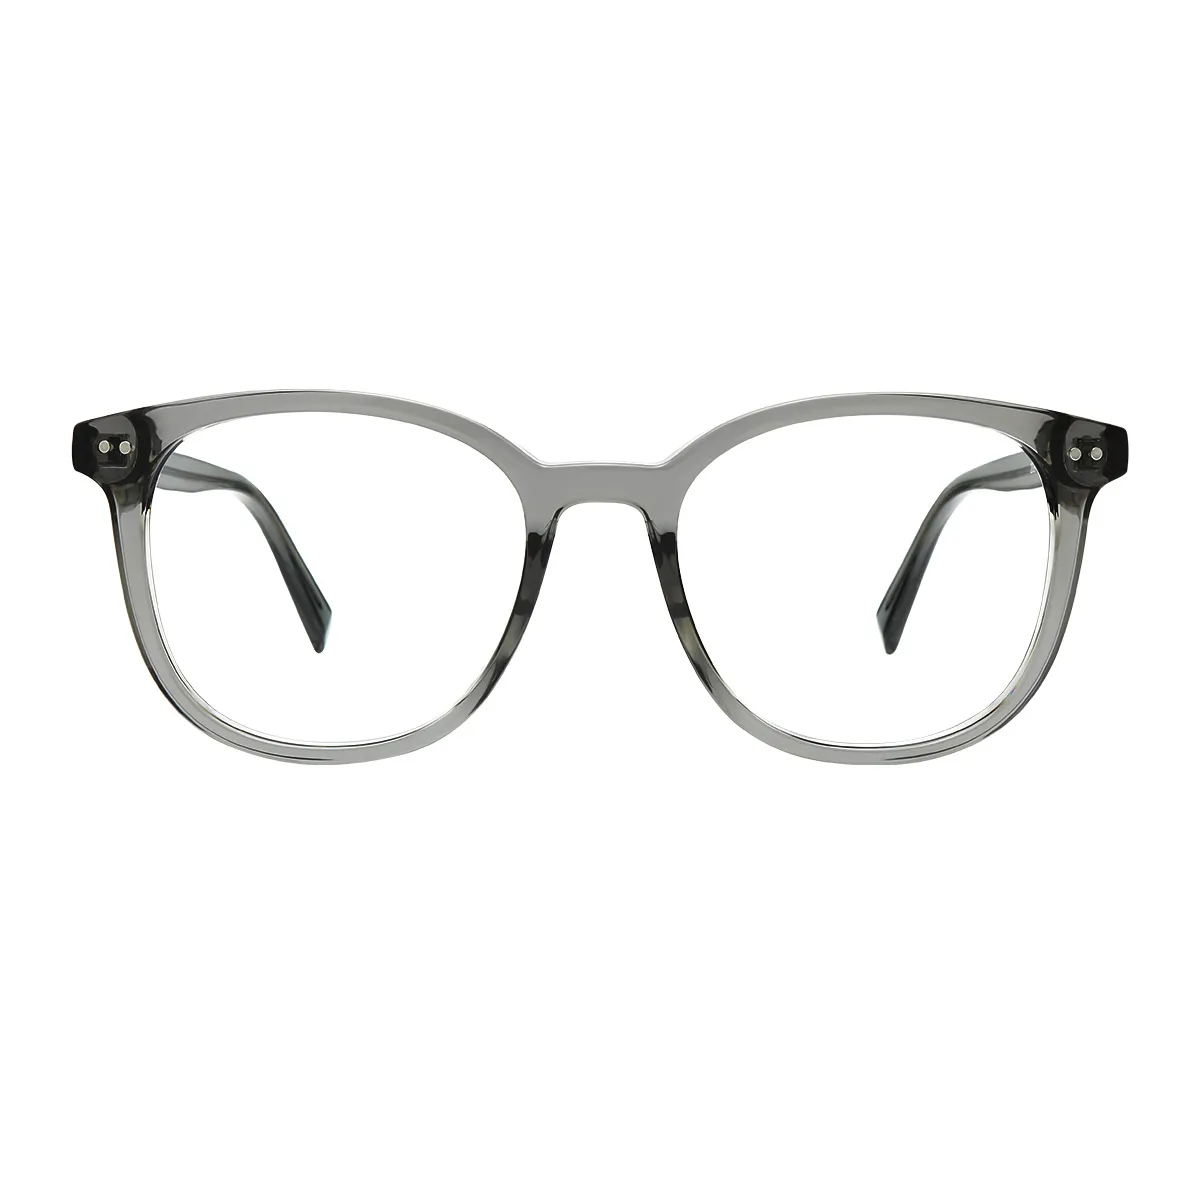 Delaware - Square Gray Glasses for Men & Women